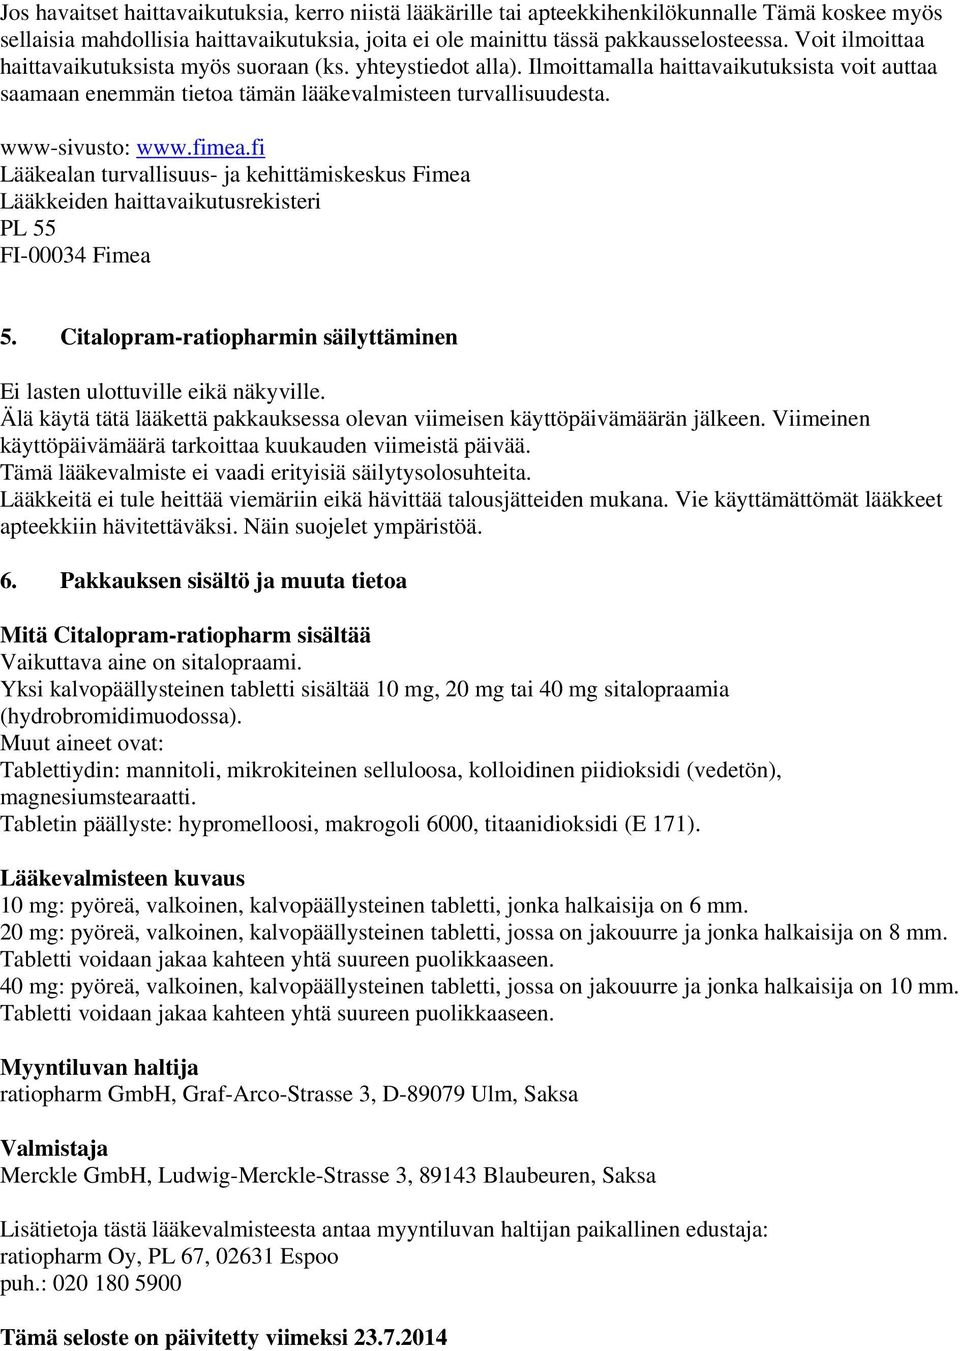 fimea.fi Lääkealan turvallisuus- ja kehittämiskeskus Fimea Lääkkeiden haittavaikutusrekisteri PL 55 FI-00034 Fimea 5. Citalopram-ratiopharmin säilyttäminen Ei lasten ulottuville eikä näkyville.